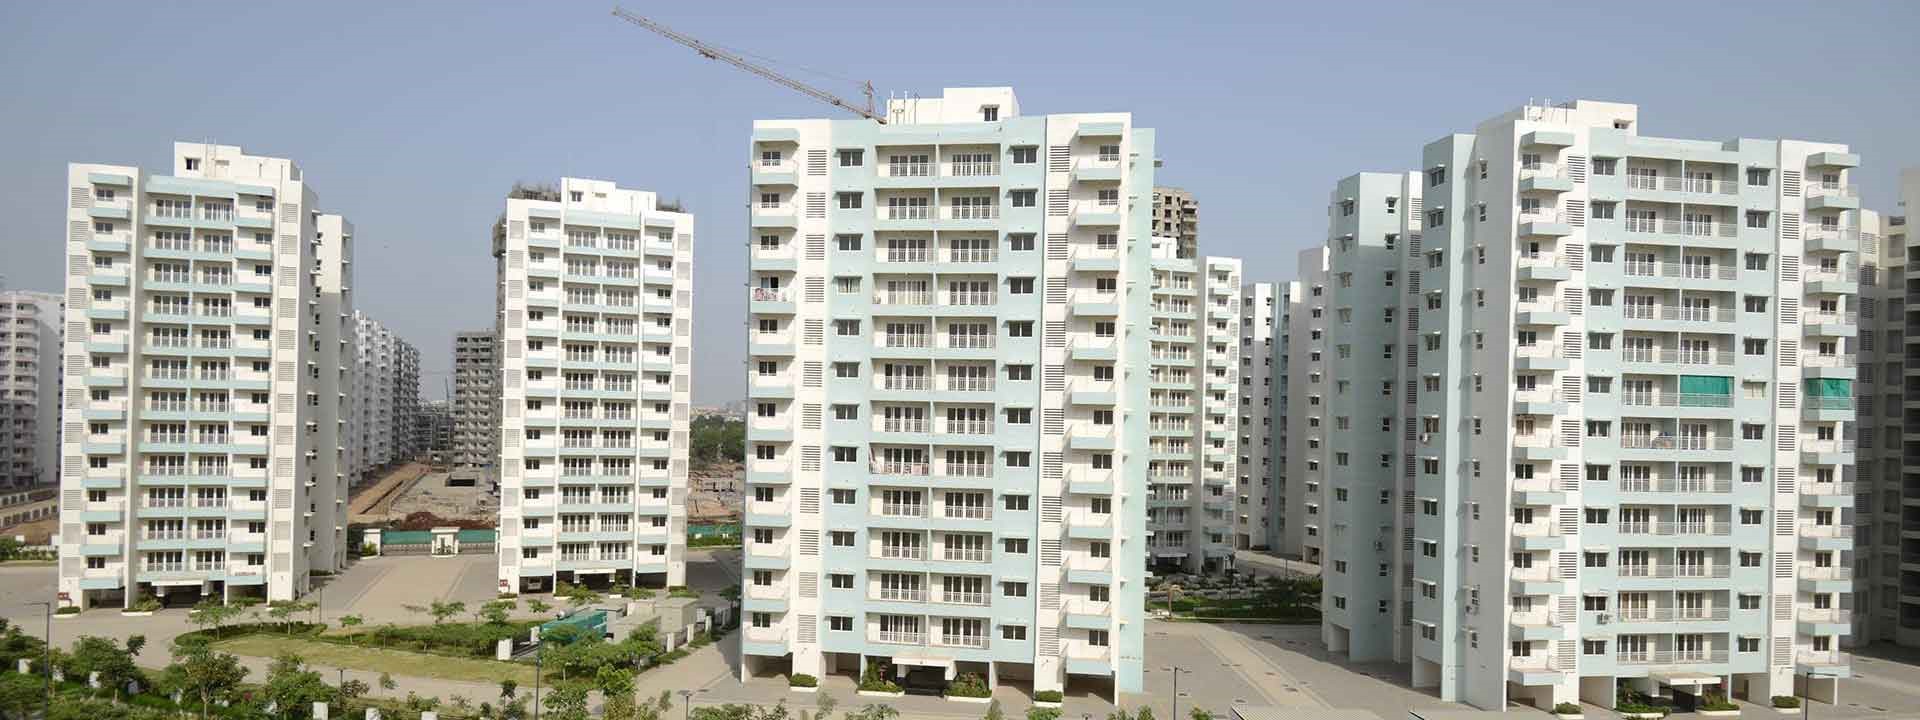 Godrej Garden City in Ahmedabad- L&T Construction